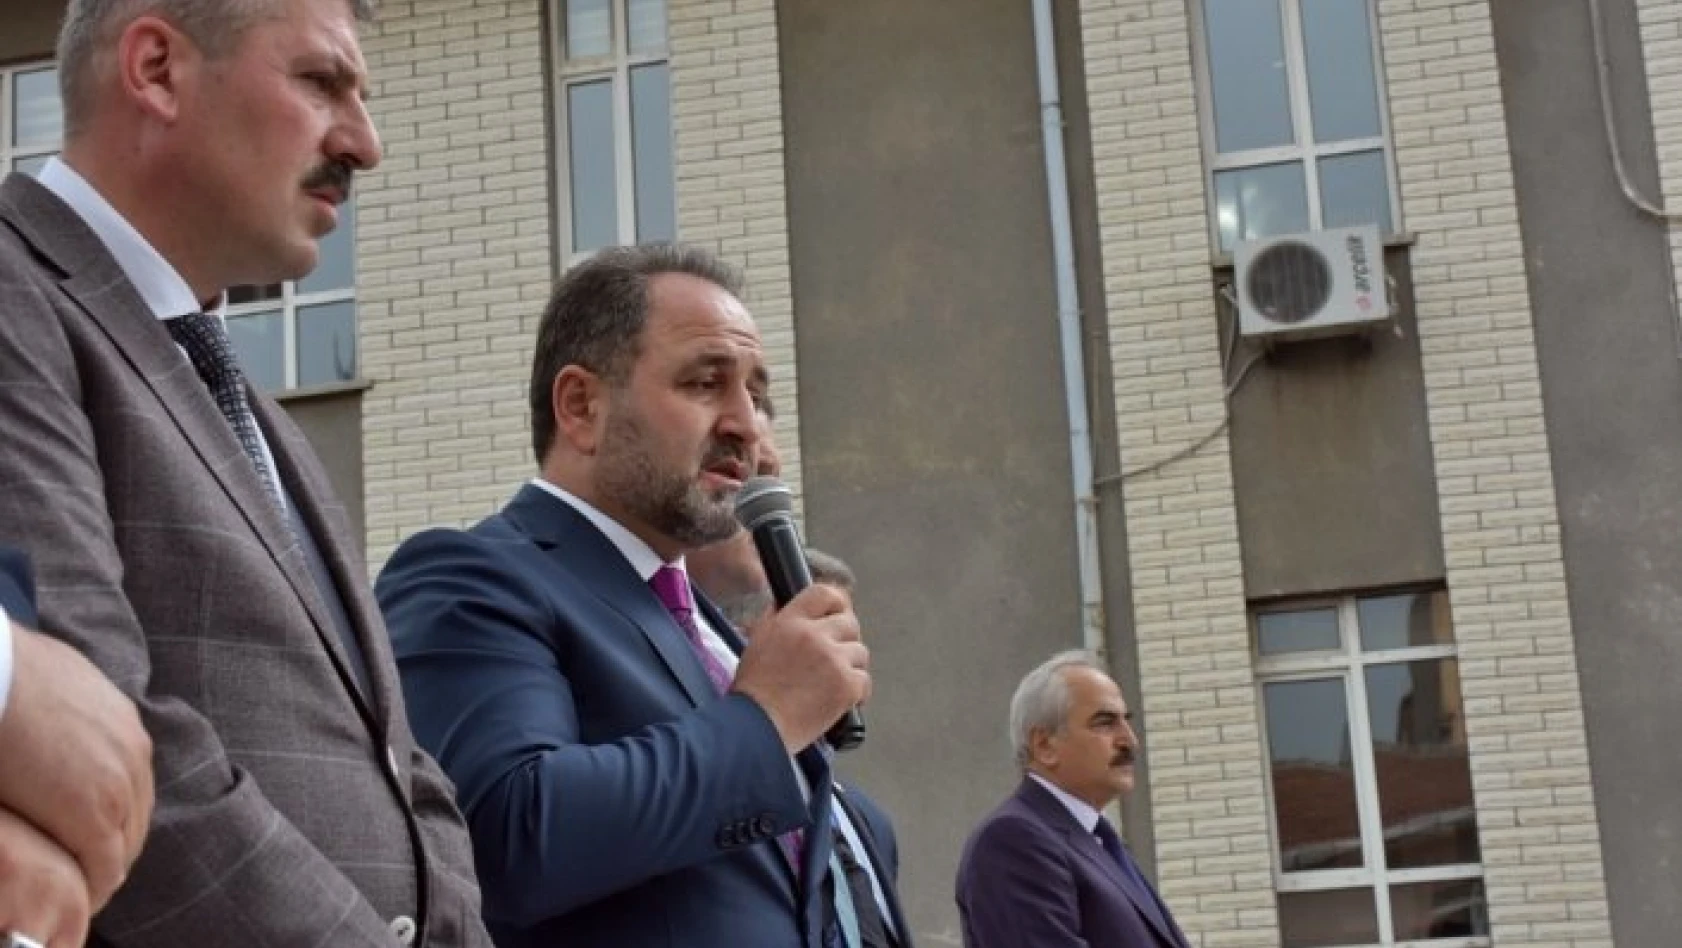 Milletvekili Demir, &quotKastamonu 3 vekilini AK parti sıralarına gönderecek"